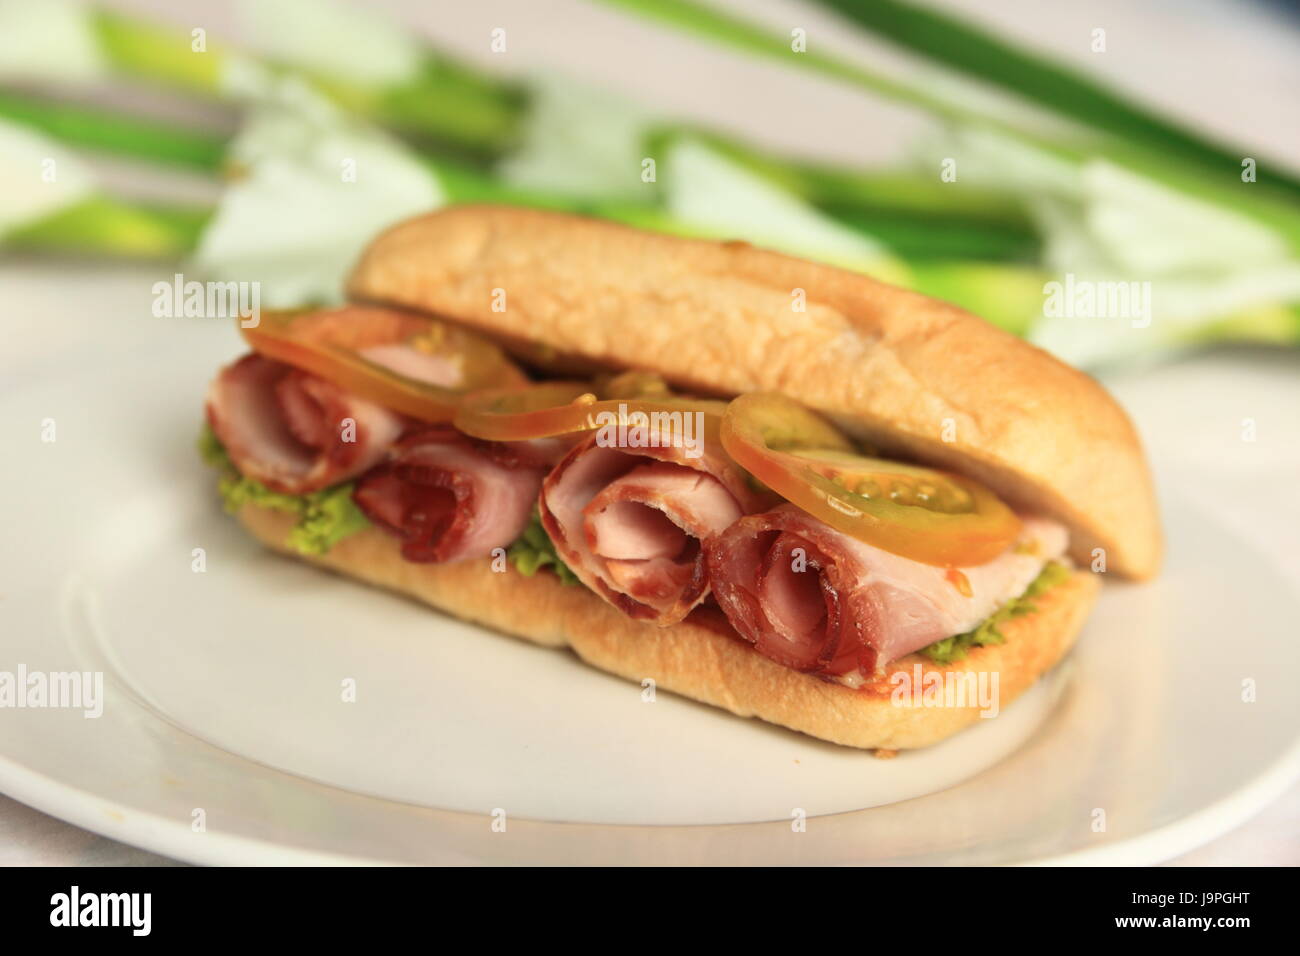 bread, sandwich, food, dish, meal, lunch, ham, baguette, snack, breakfeast, Stock Photo